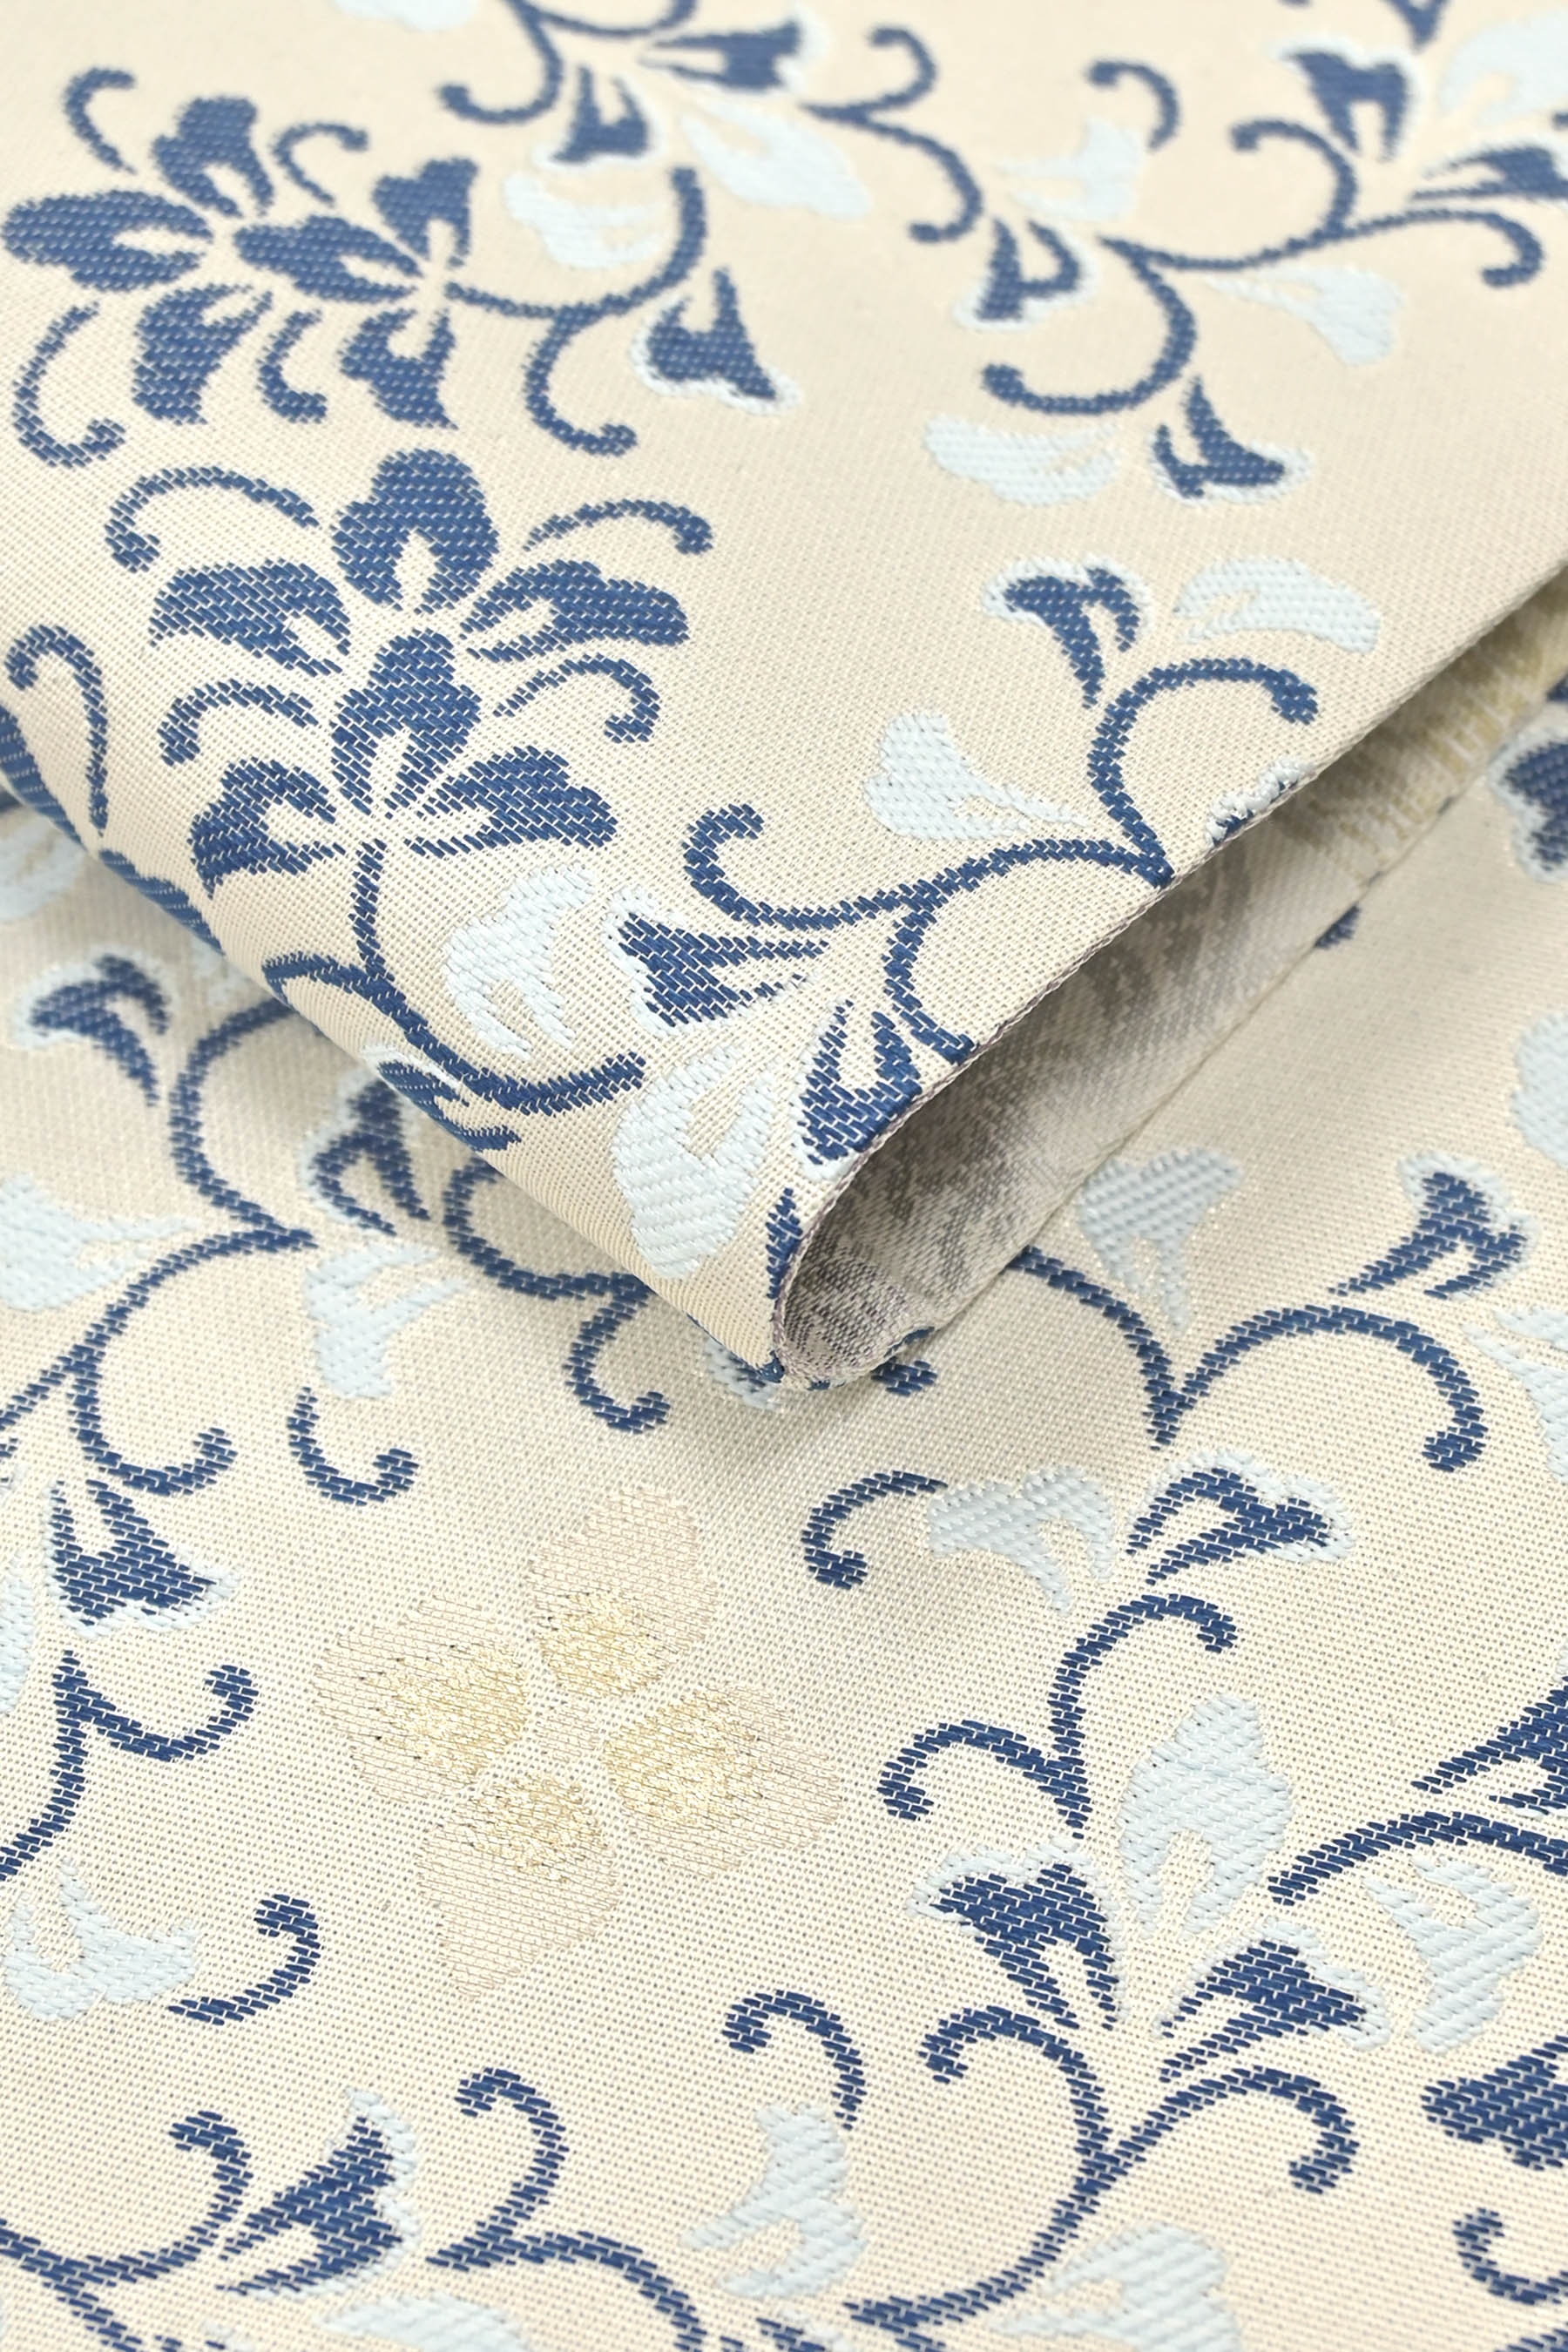 35.正絹 西陣織 藍染袋帯単品素材正絹 - 着物・浴衣